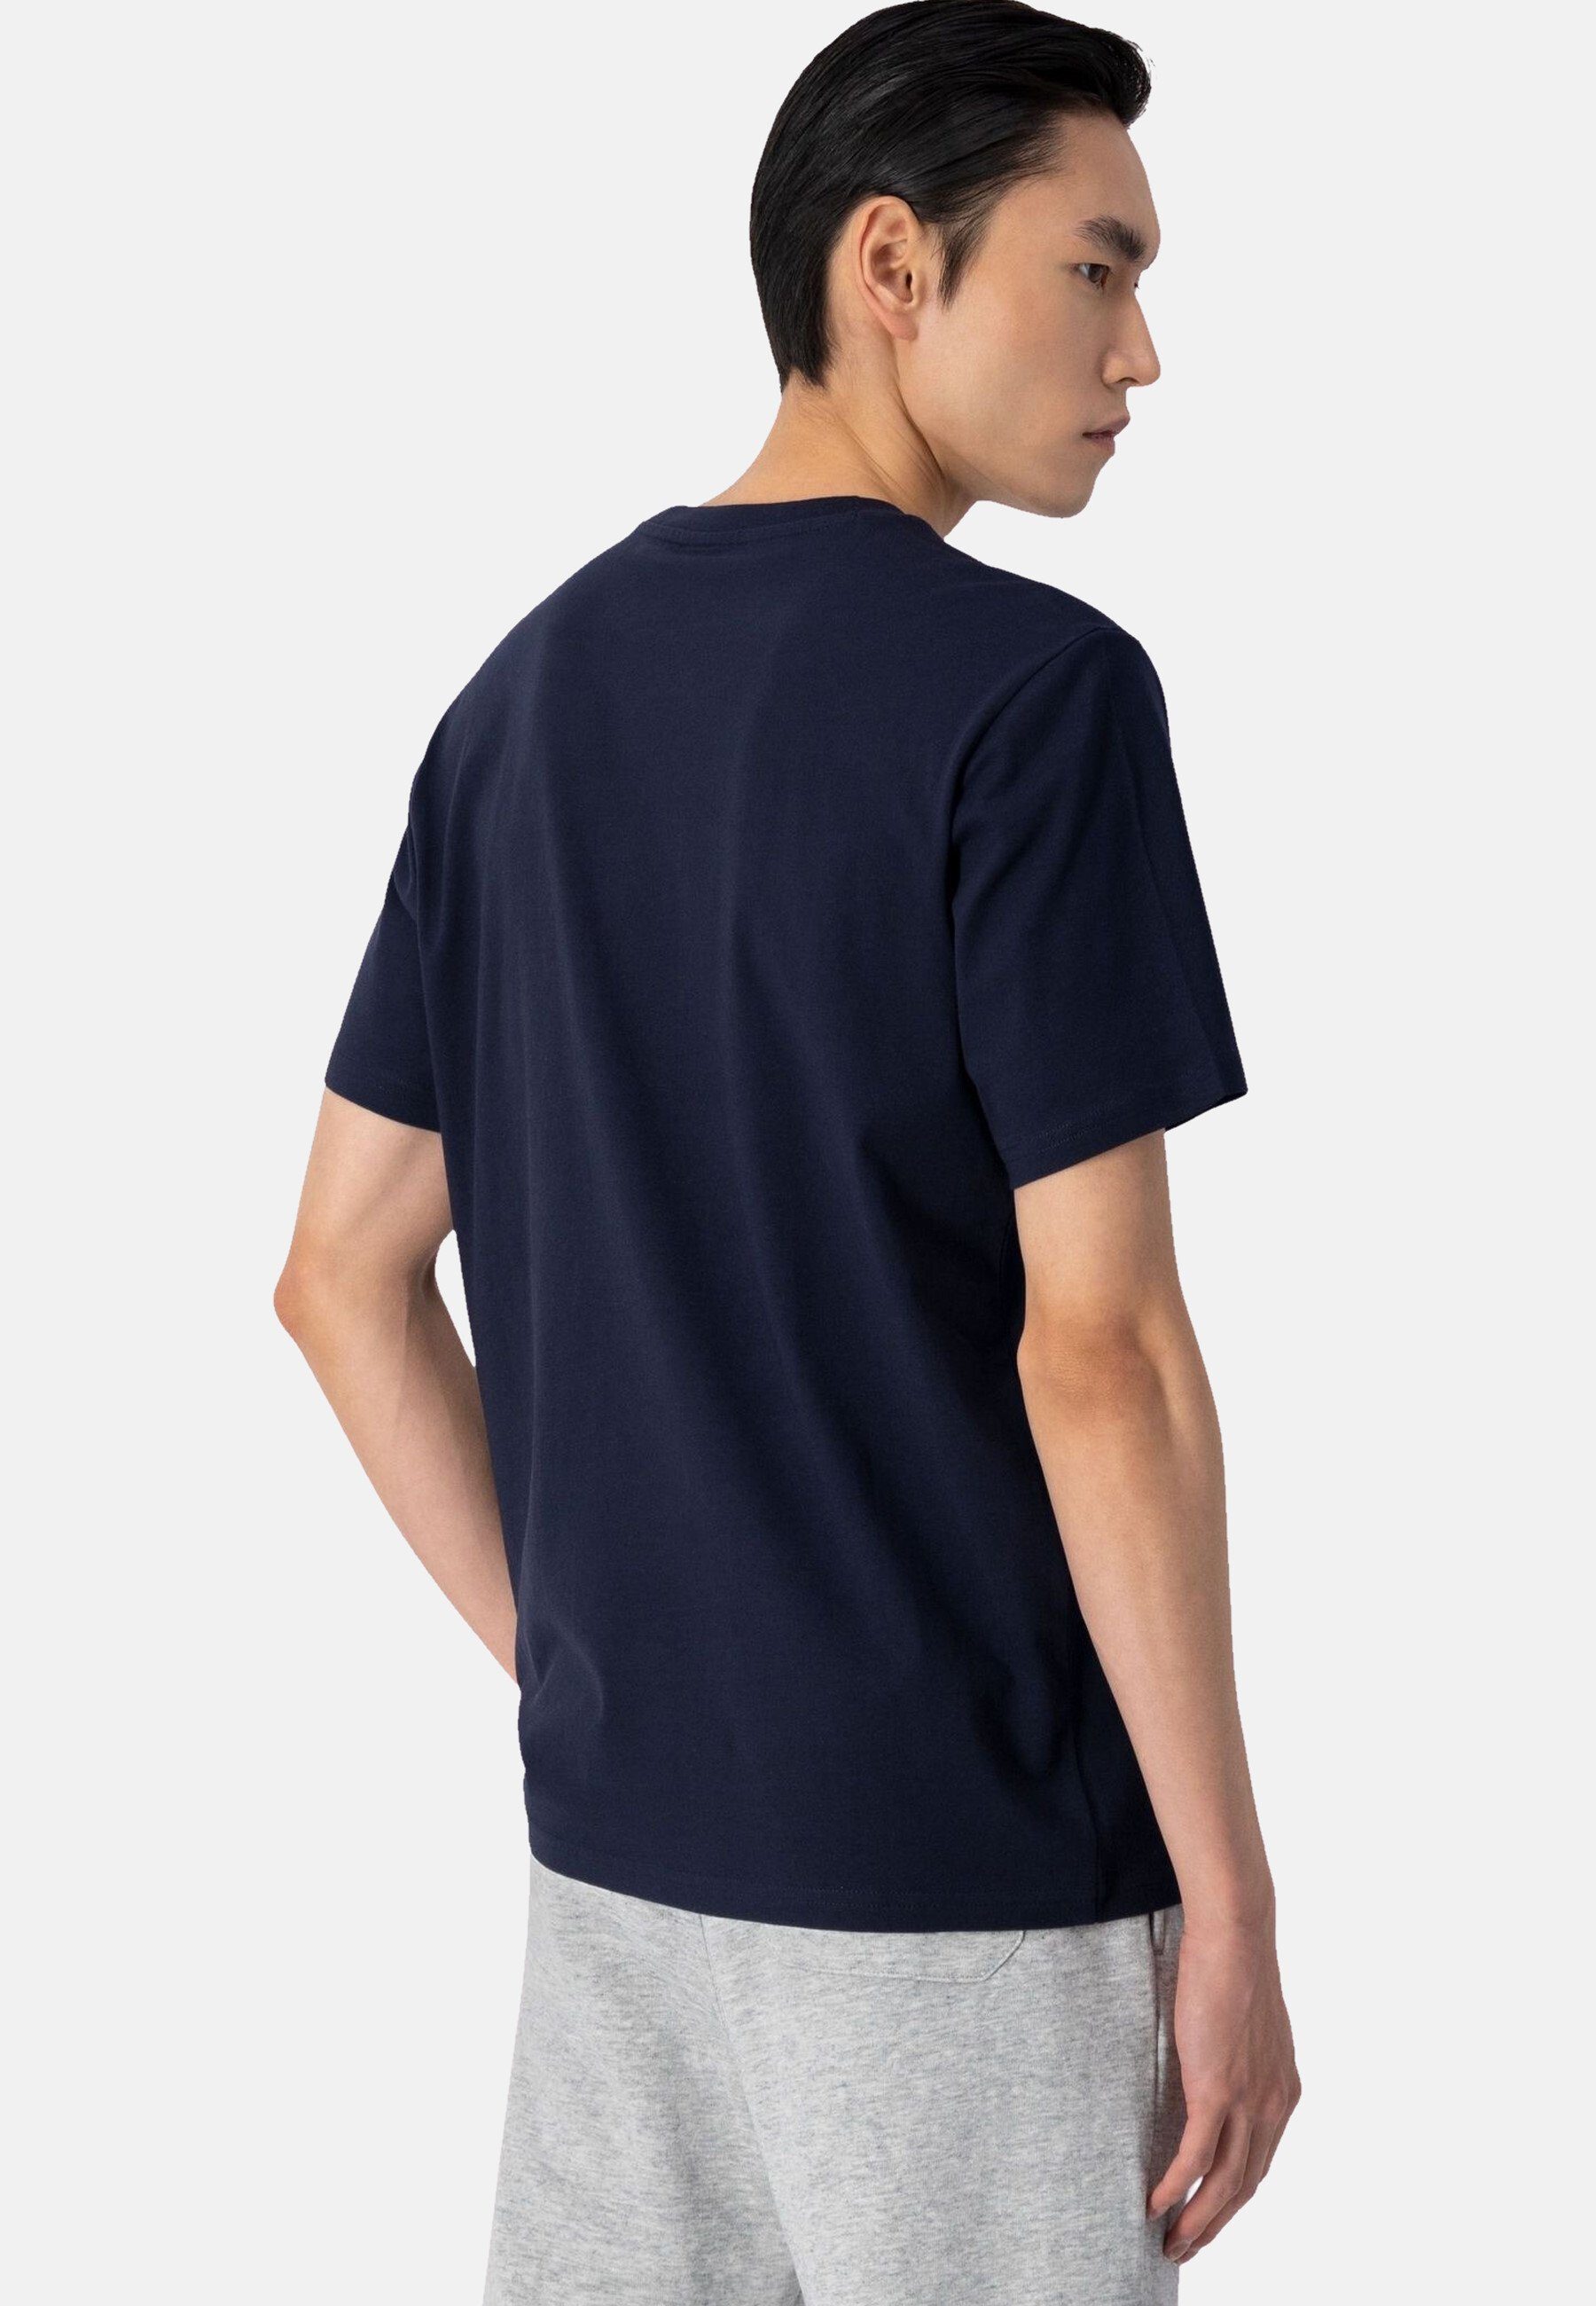 aus Shirt Baumwolle dunkelblau mit Rundhals-T-Shirt T-Shirt Champion